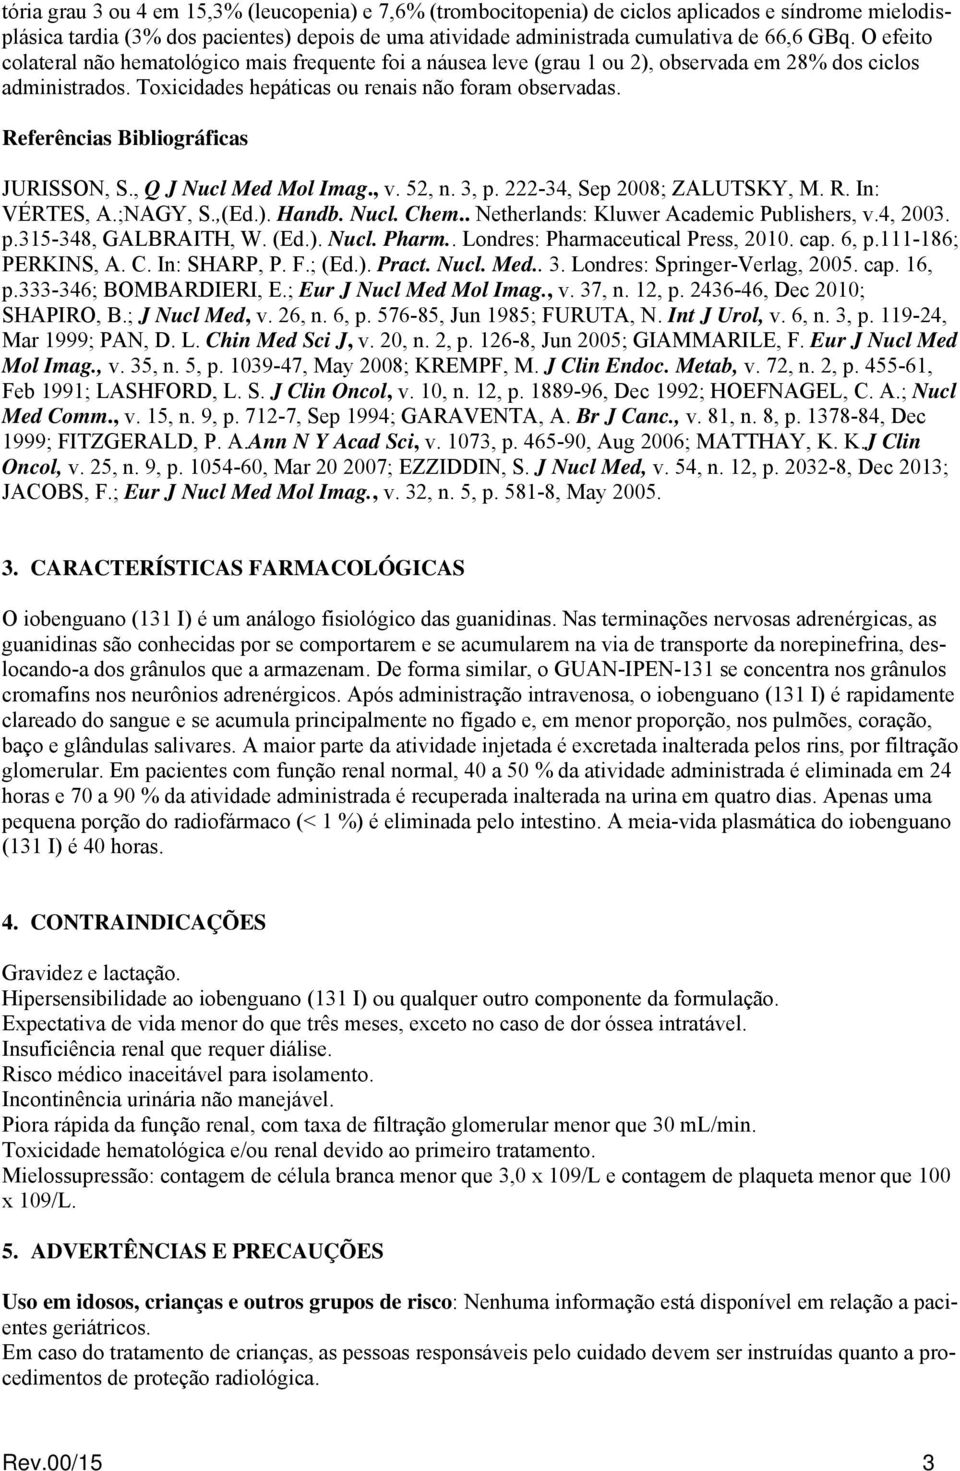 Referências Bibliográficas JURISSON, S., Q J Nucl Med Mol Imag., v. 52, n., p. 222-4, Sep 2008; ZALUTSKY, M. R. In: VÉRTES, A.;NAGY, S.,(Ed.). Handb. Nucl. Chem.